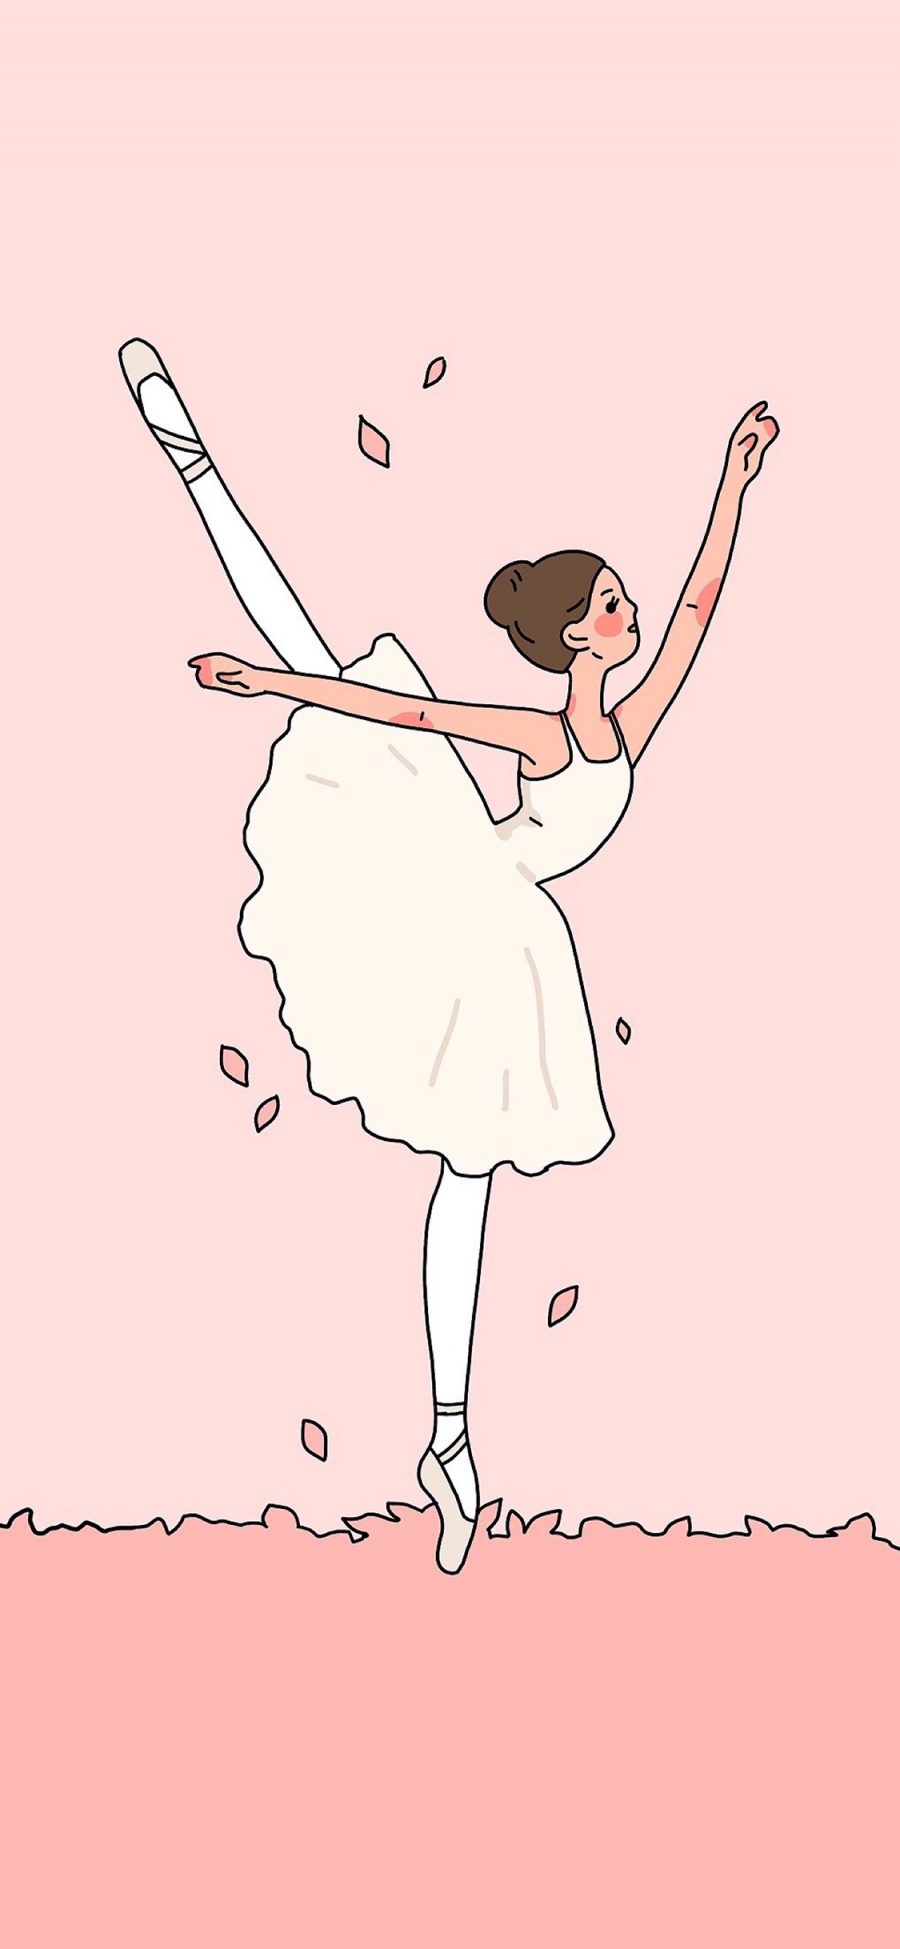 [2436×1125]插图 芭蕾舞者 女孩 卡通 韩国插画师그림그리는방 苹果手机动漫壁纸图片